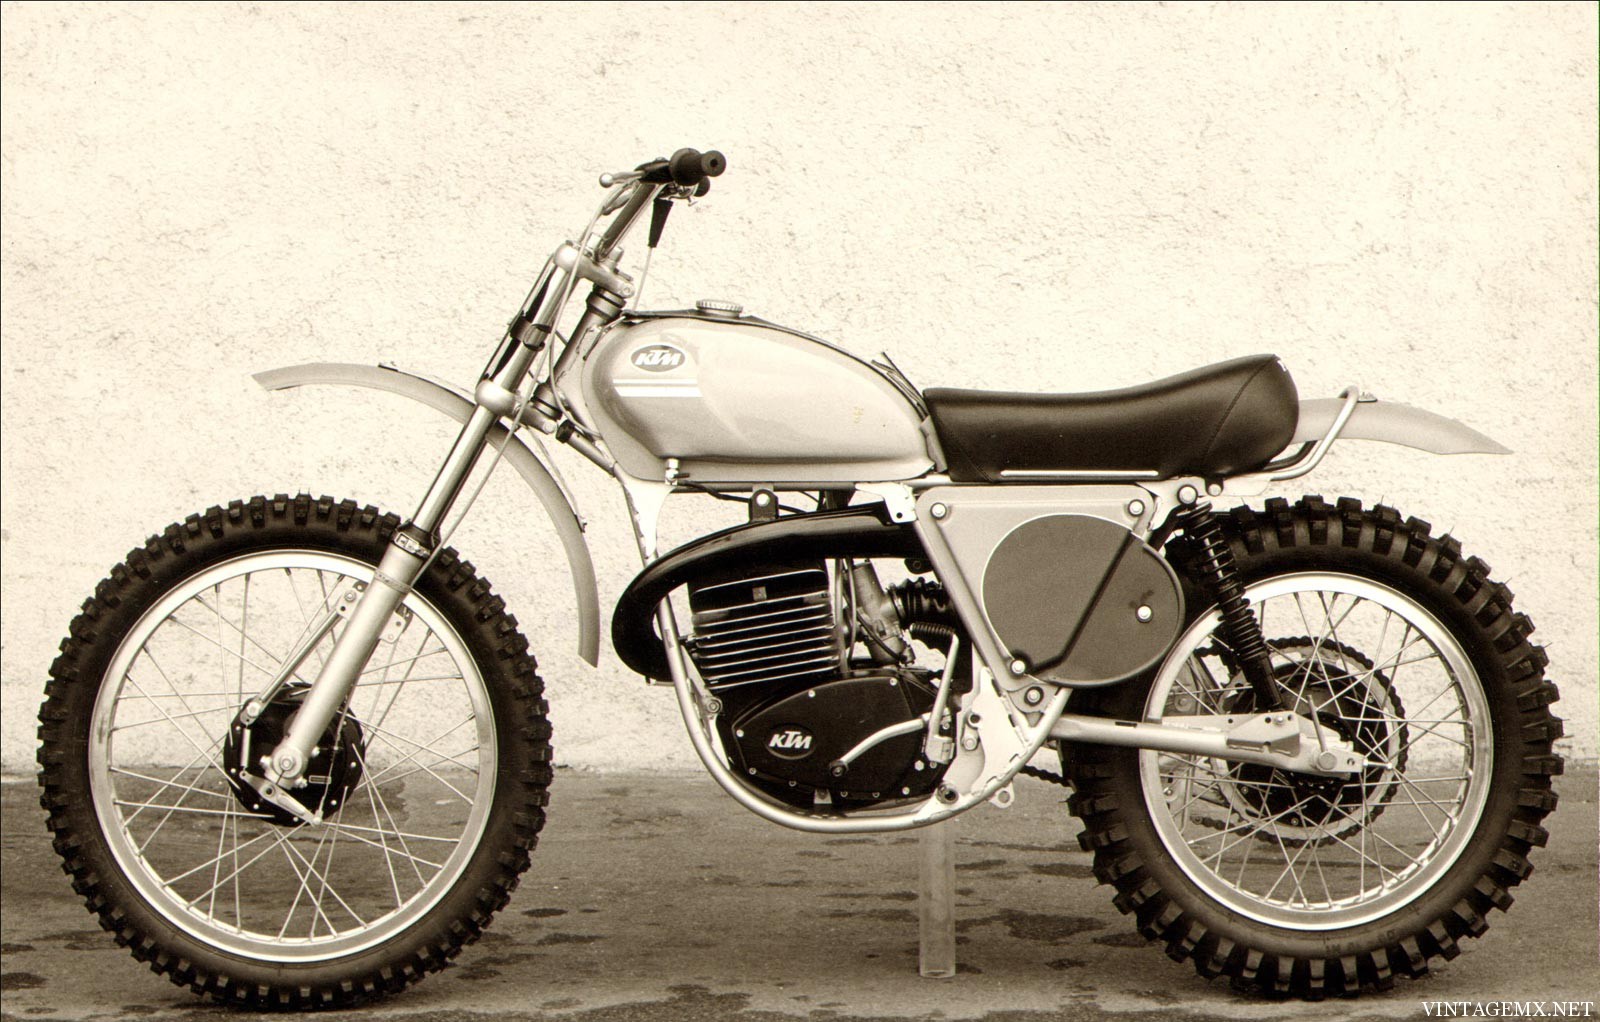 Vintage Ktm Motorcycles 121